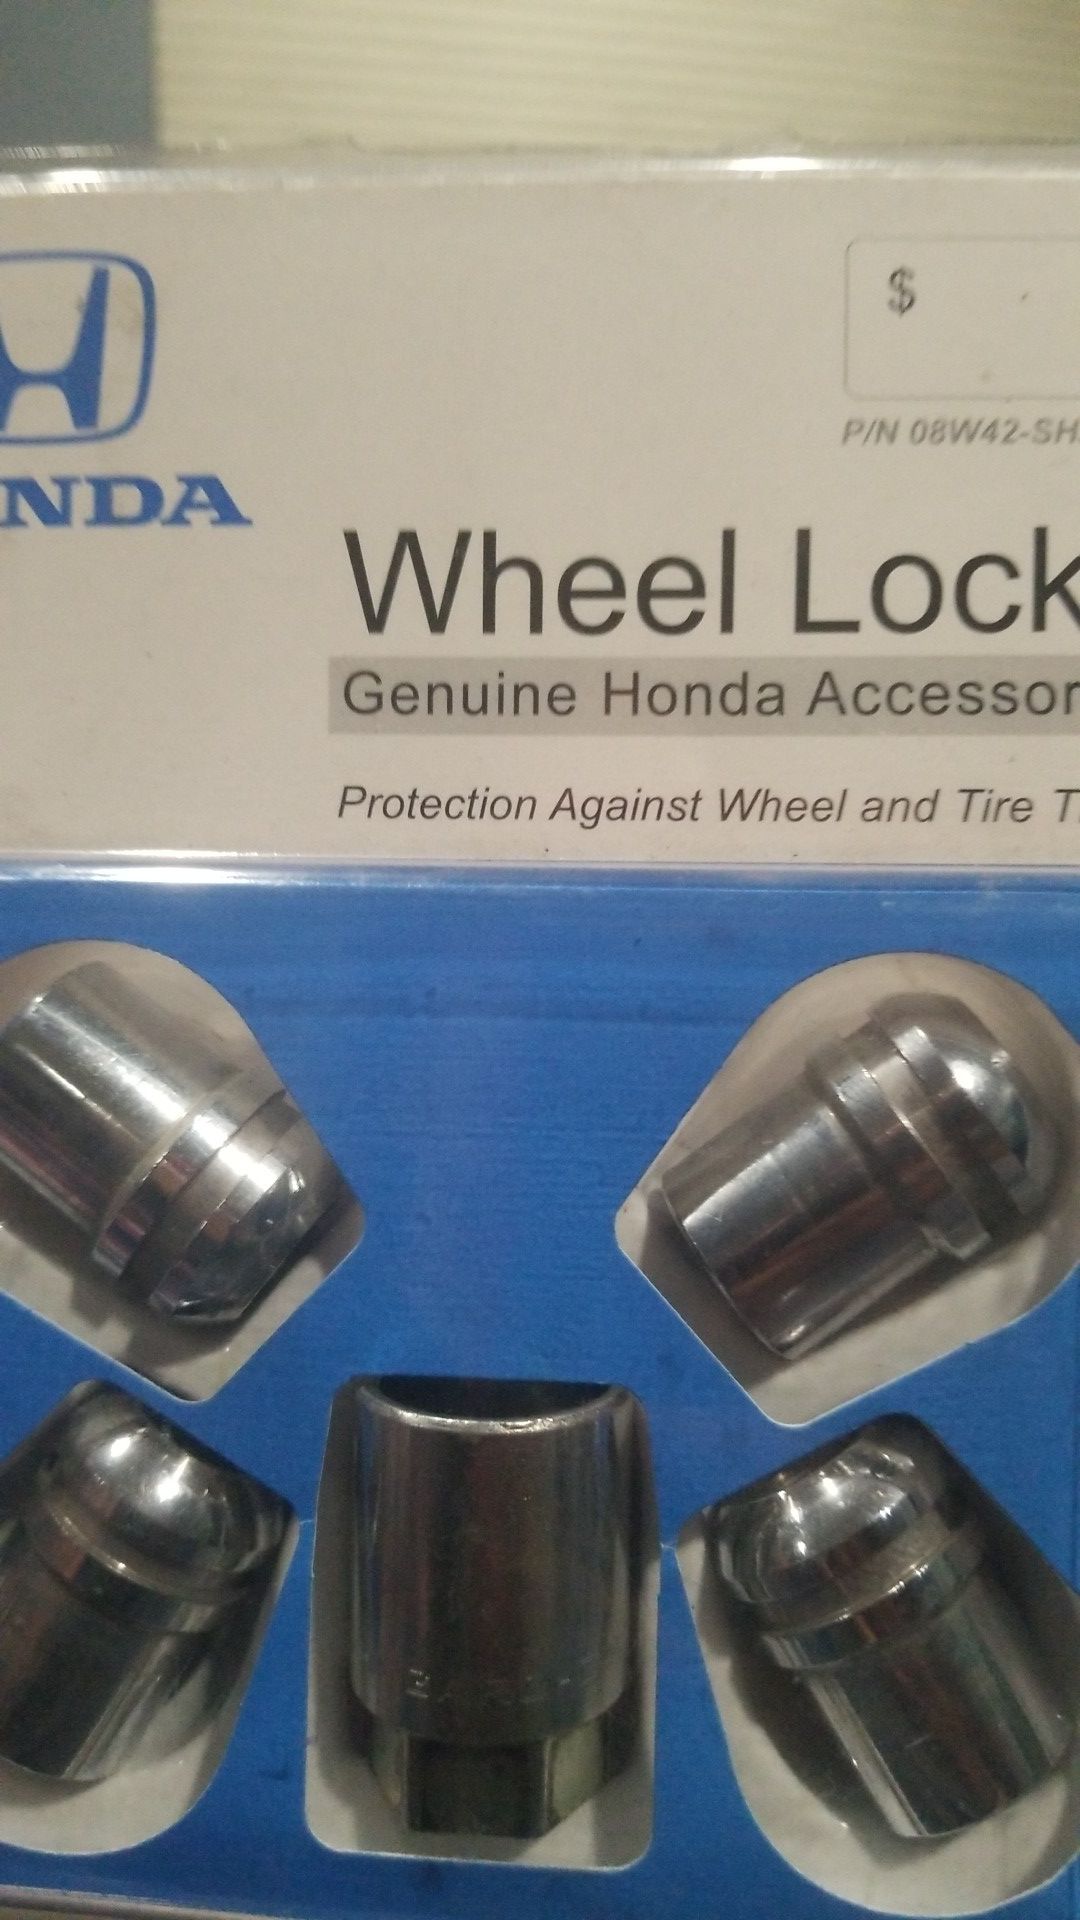 Honda wheel locks P/N 08W42-shj-101a